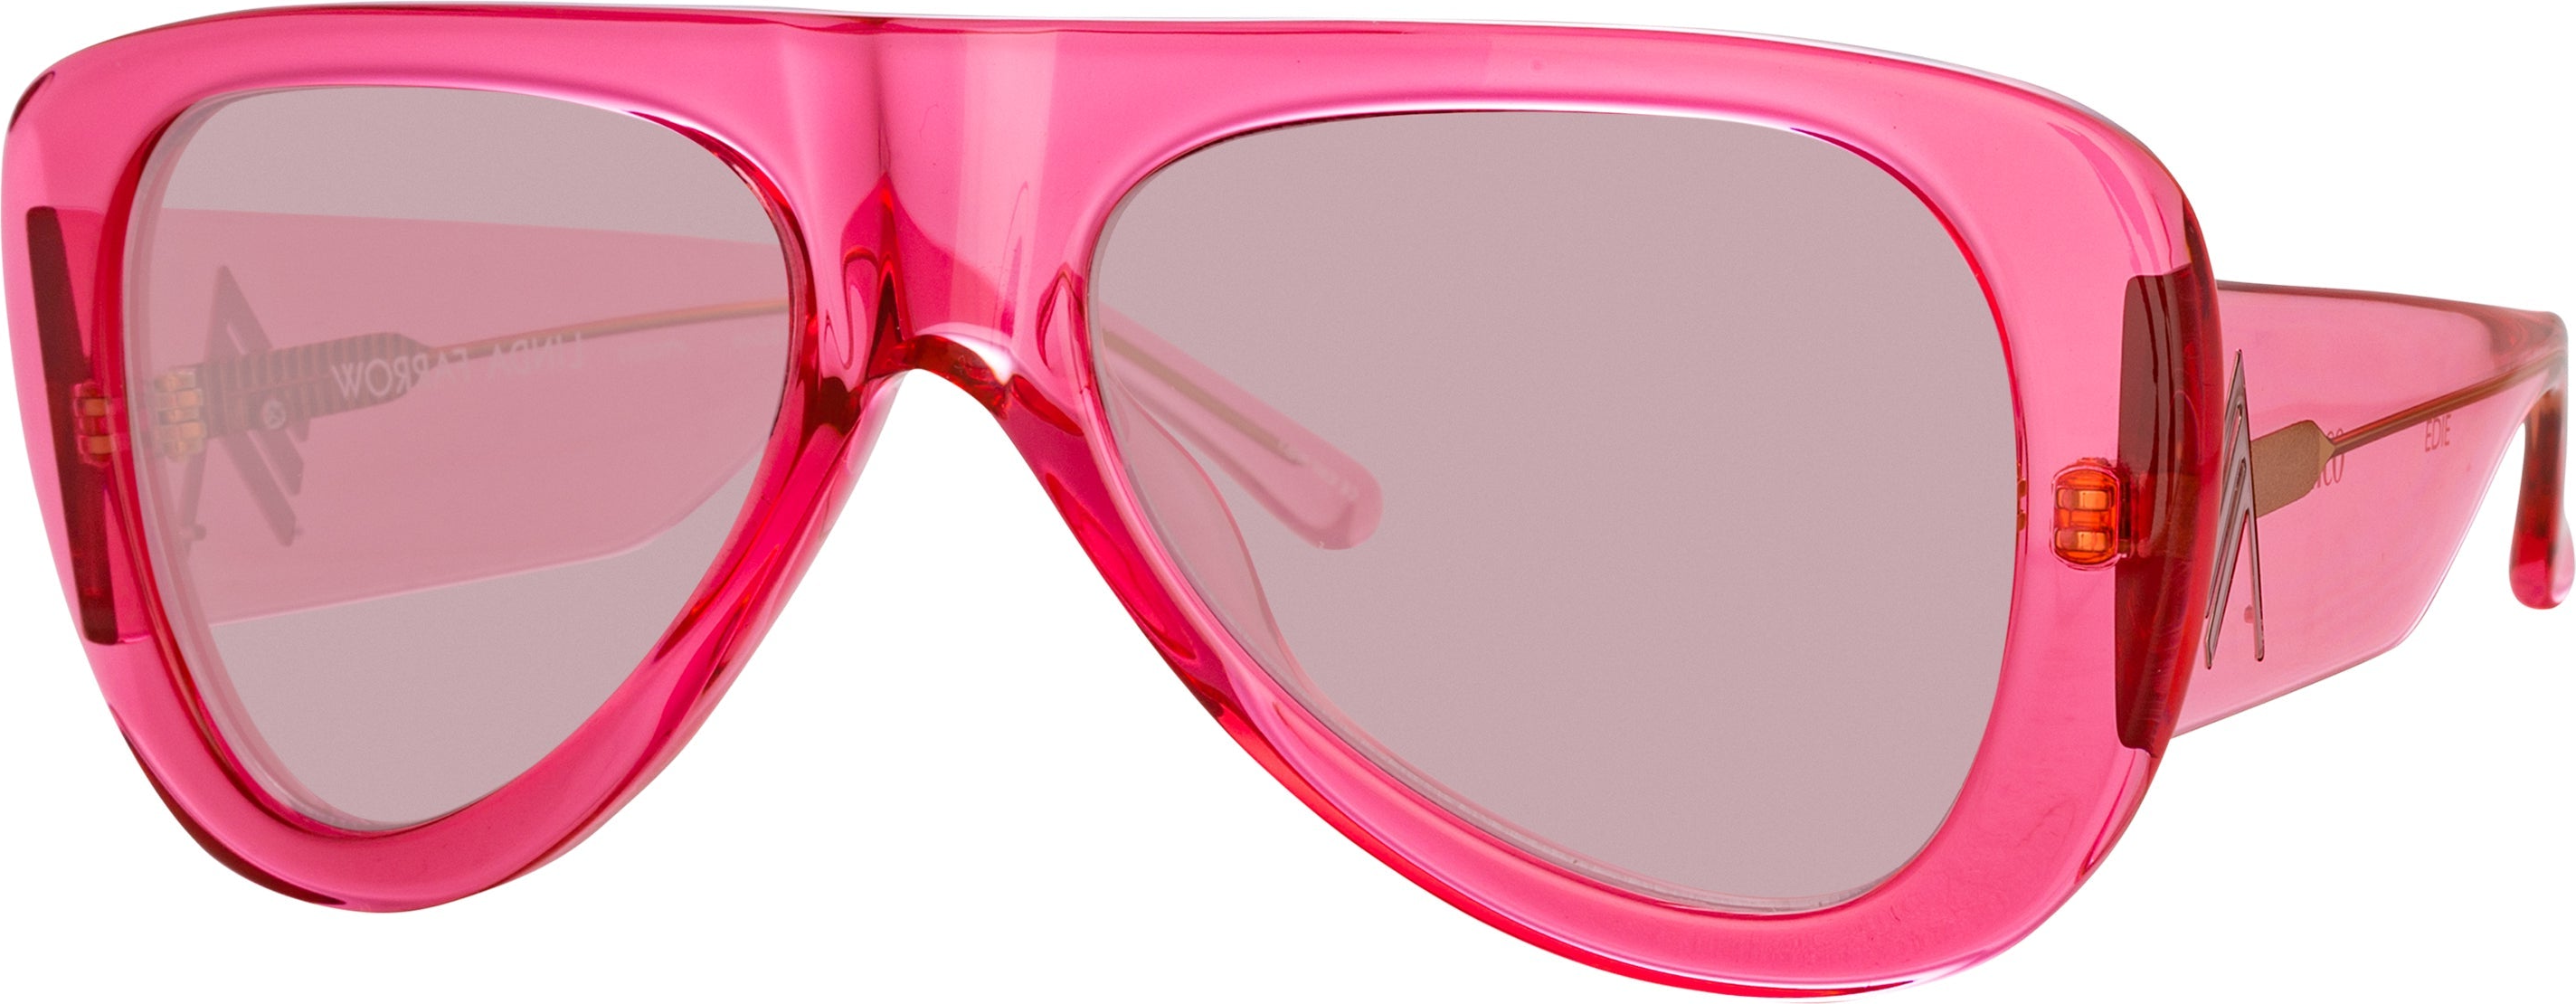 Color_ATTICO20C3SUN - The Attico Edie Aviator Sunglasses in Strawberry